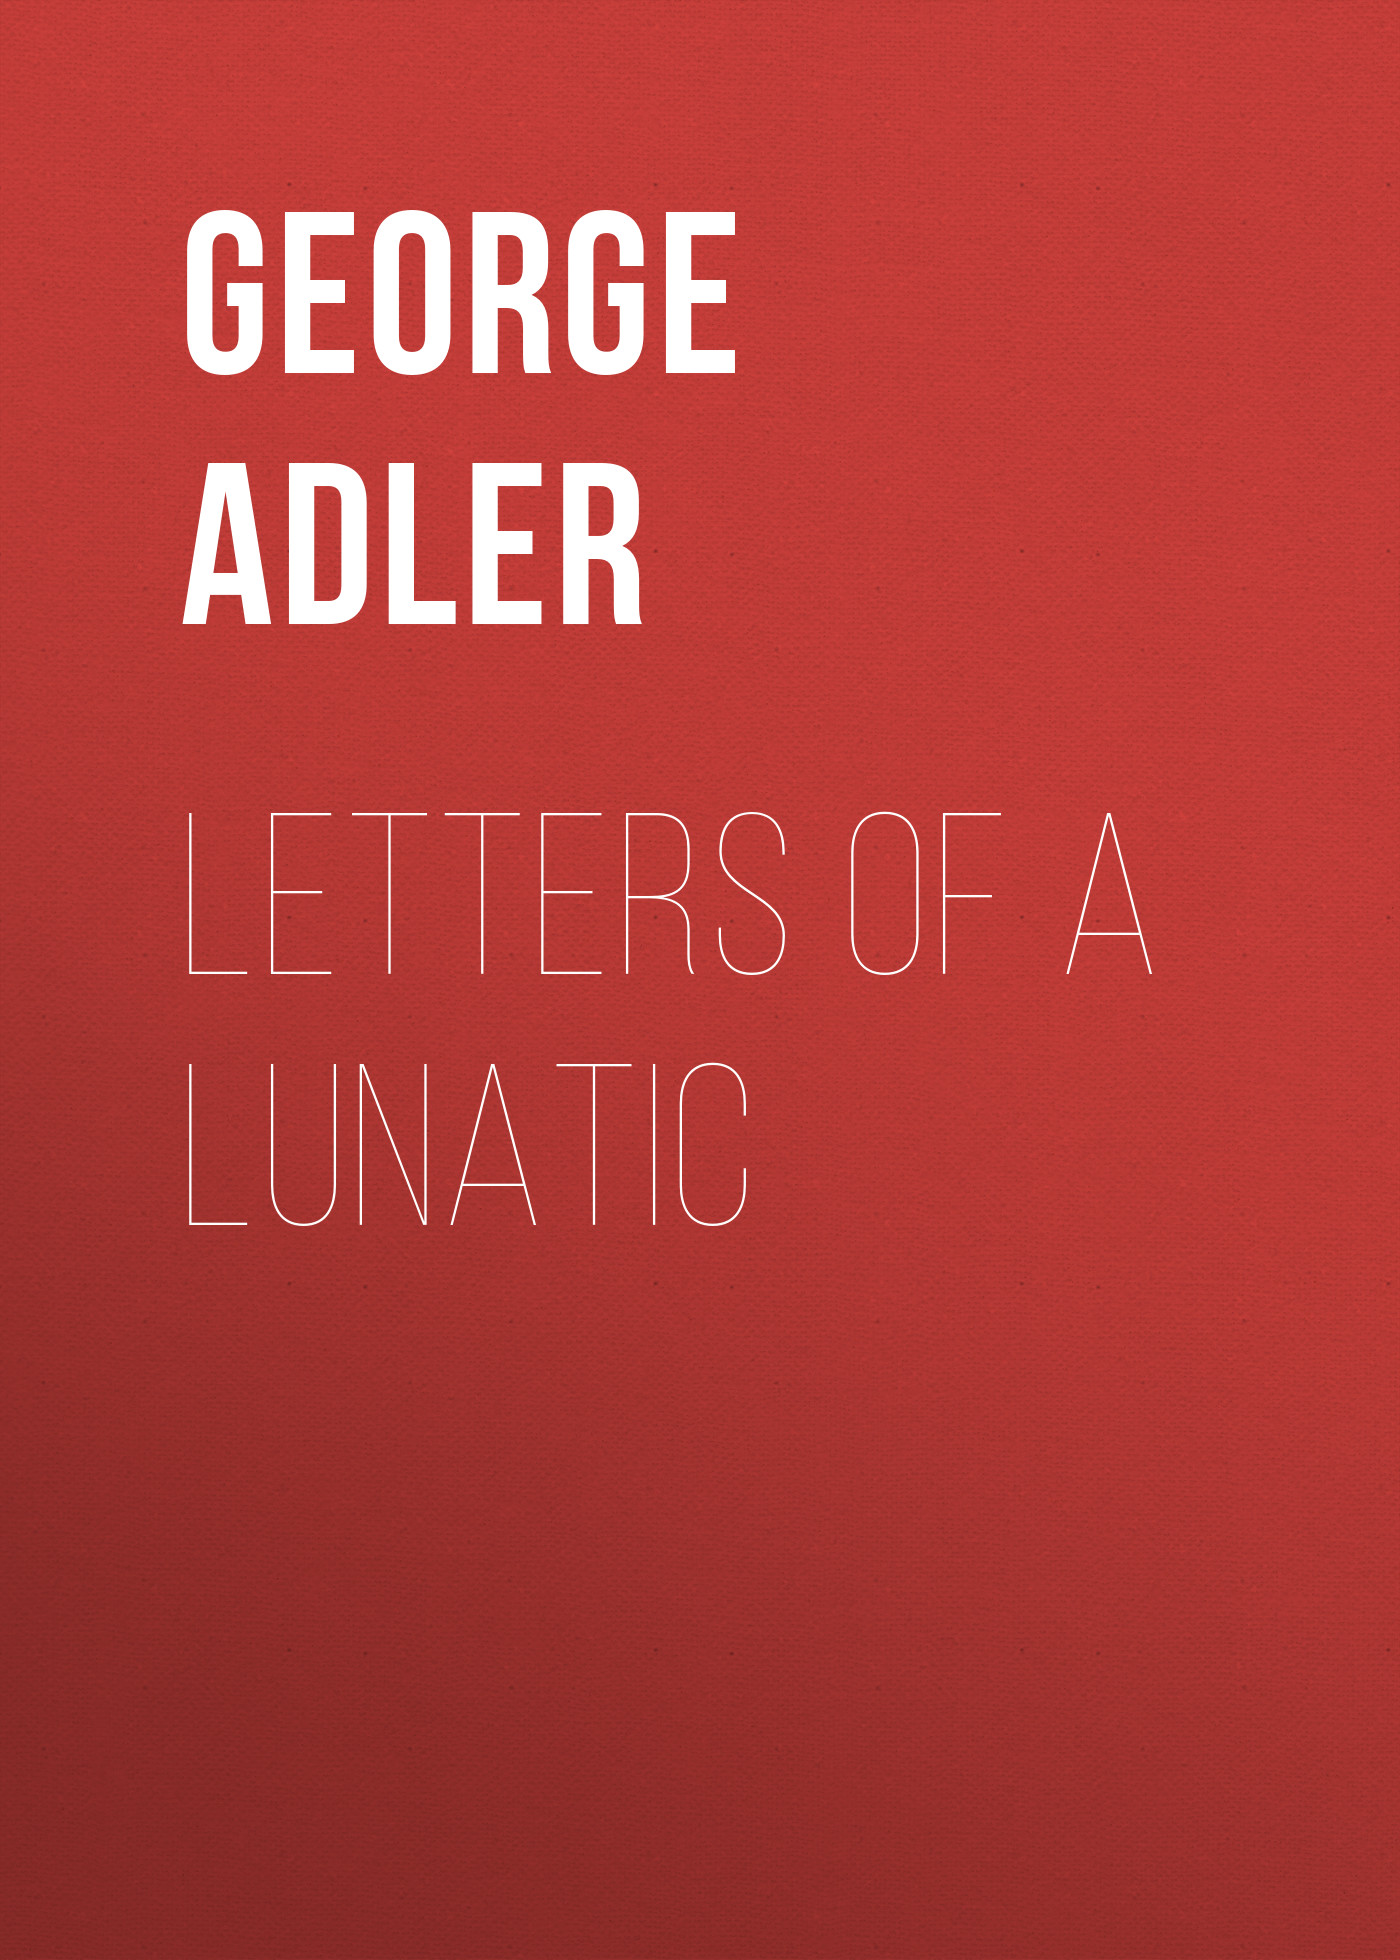 Книга Letters of a Lunatic из серии , созданная George Adler, может относится к жанру Зарубежная старинная литература, Зарубежная классика. Стоимость электронной книги Letters of a Lunatic с идентификатором 24174996 составляет 5.99 руб.